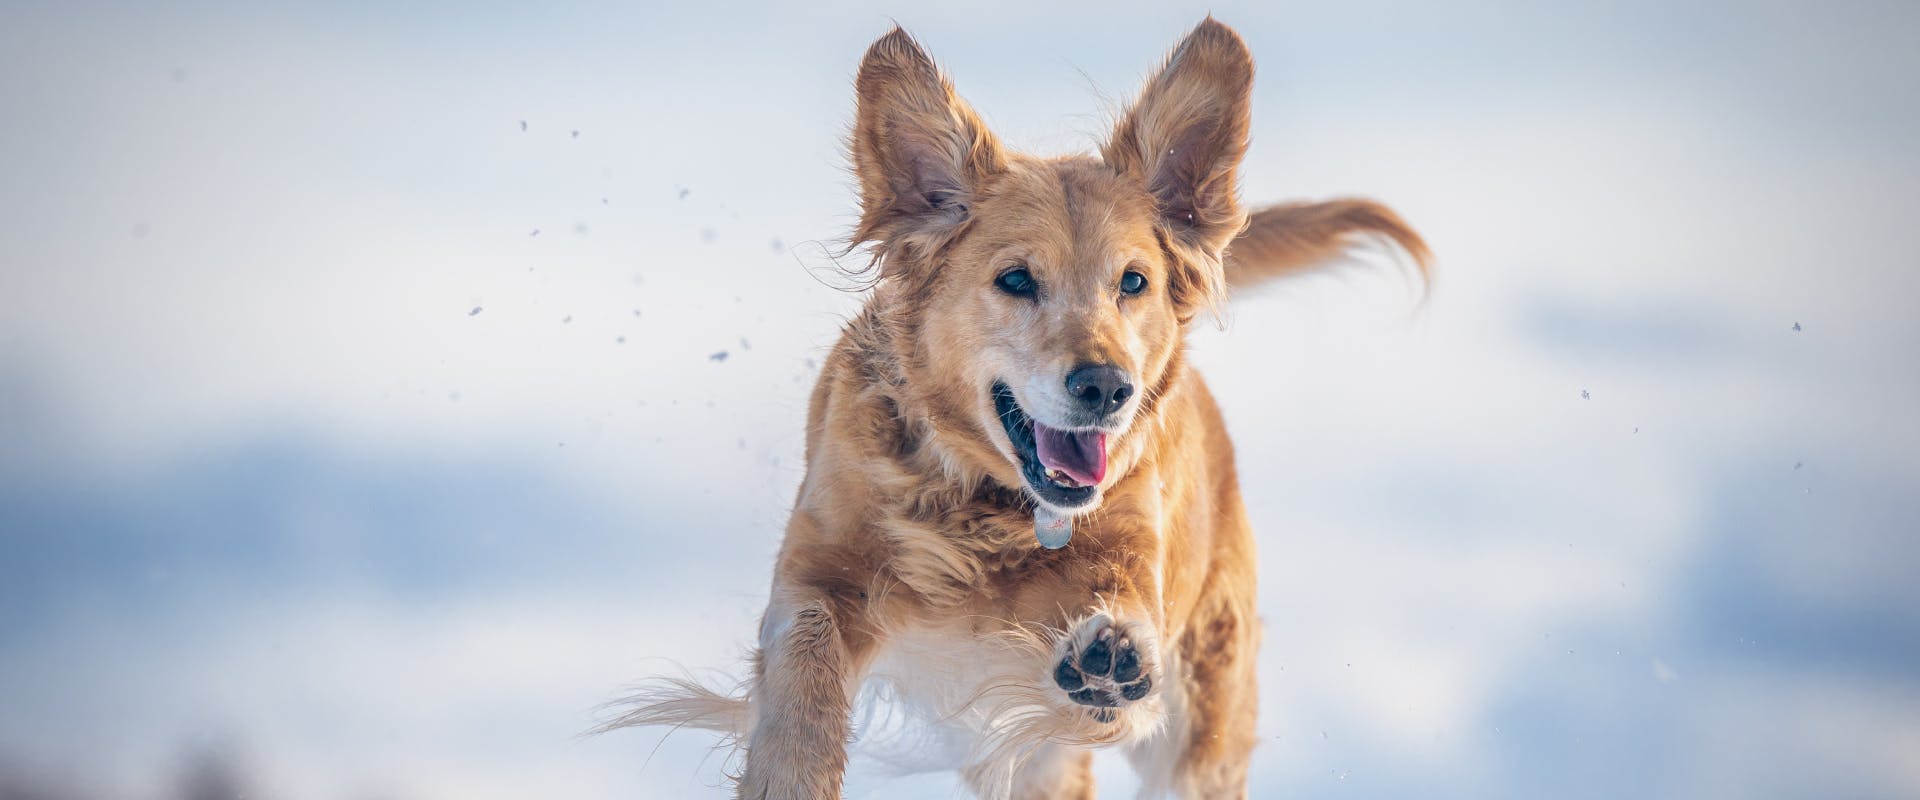 A dog runs through the snow.